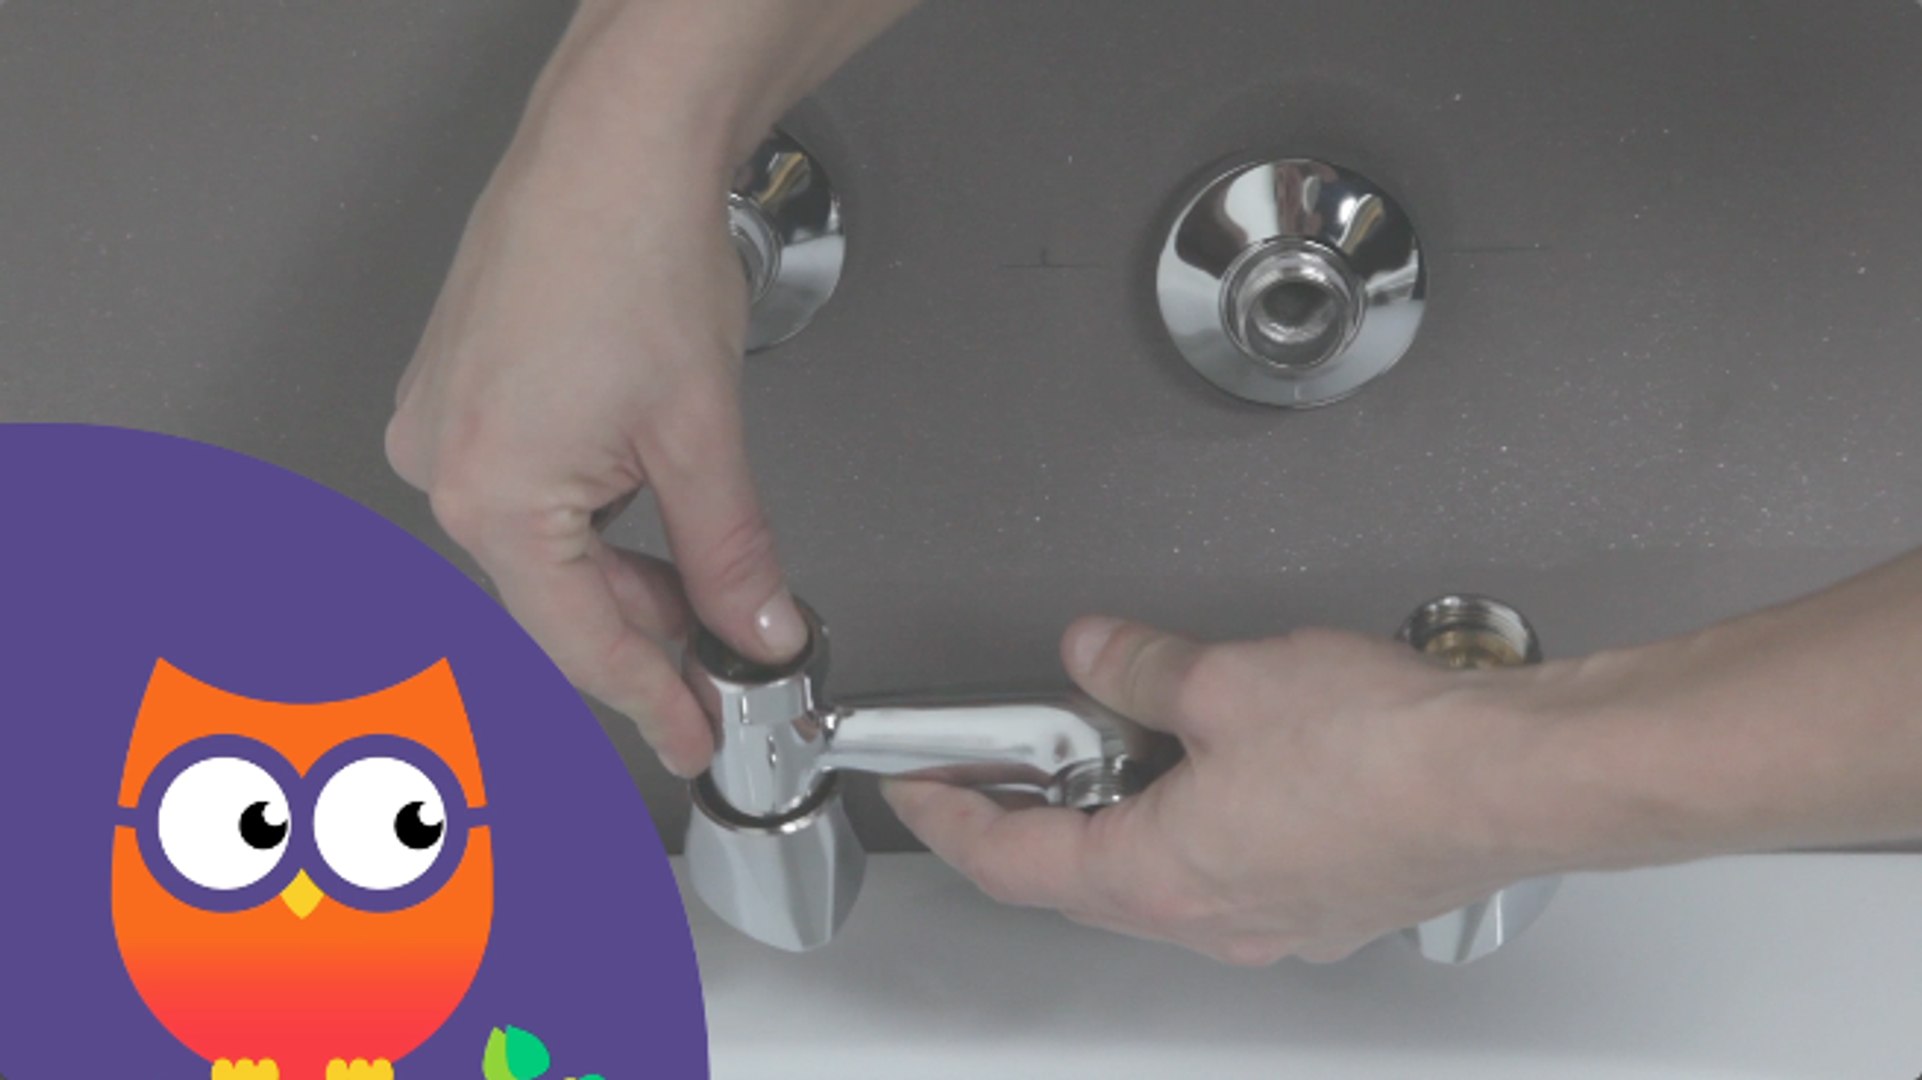 RONA - Comment installer ou remplacer un robinet sur un lavabo 